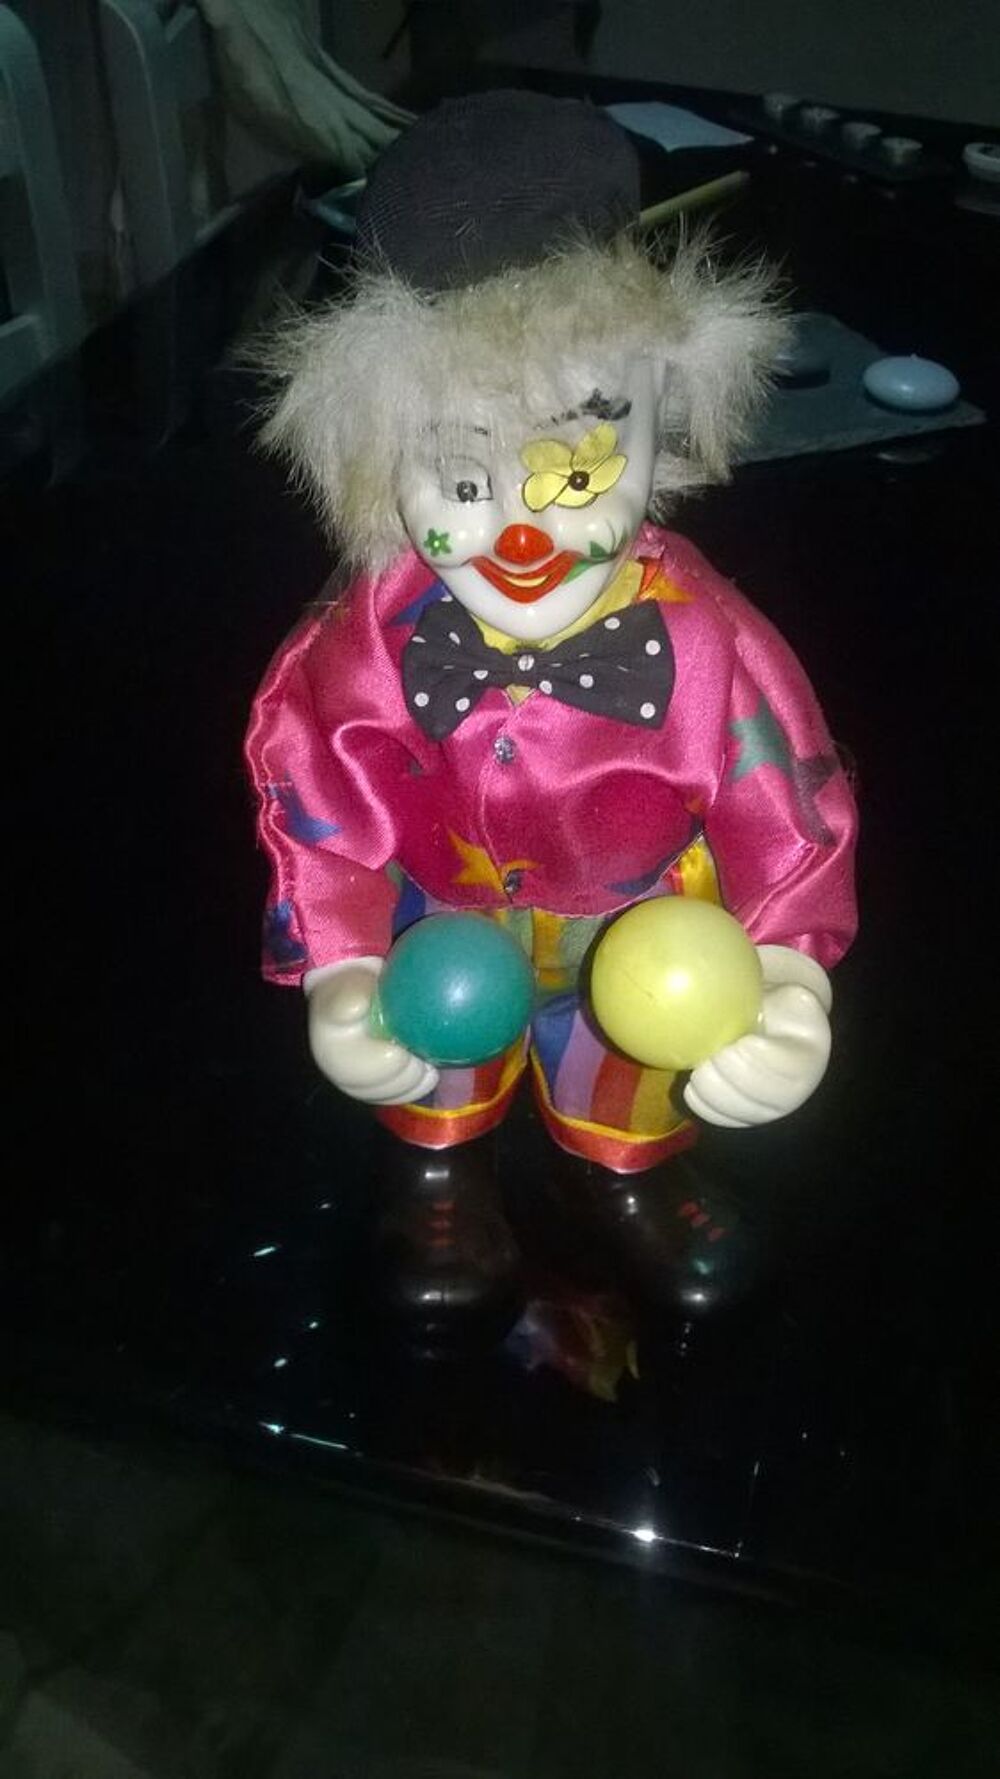 Clown musical Articule en porcelaine 
35 cm de haut avec r
Jeux / jouets